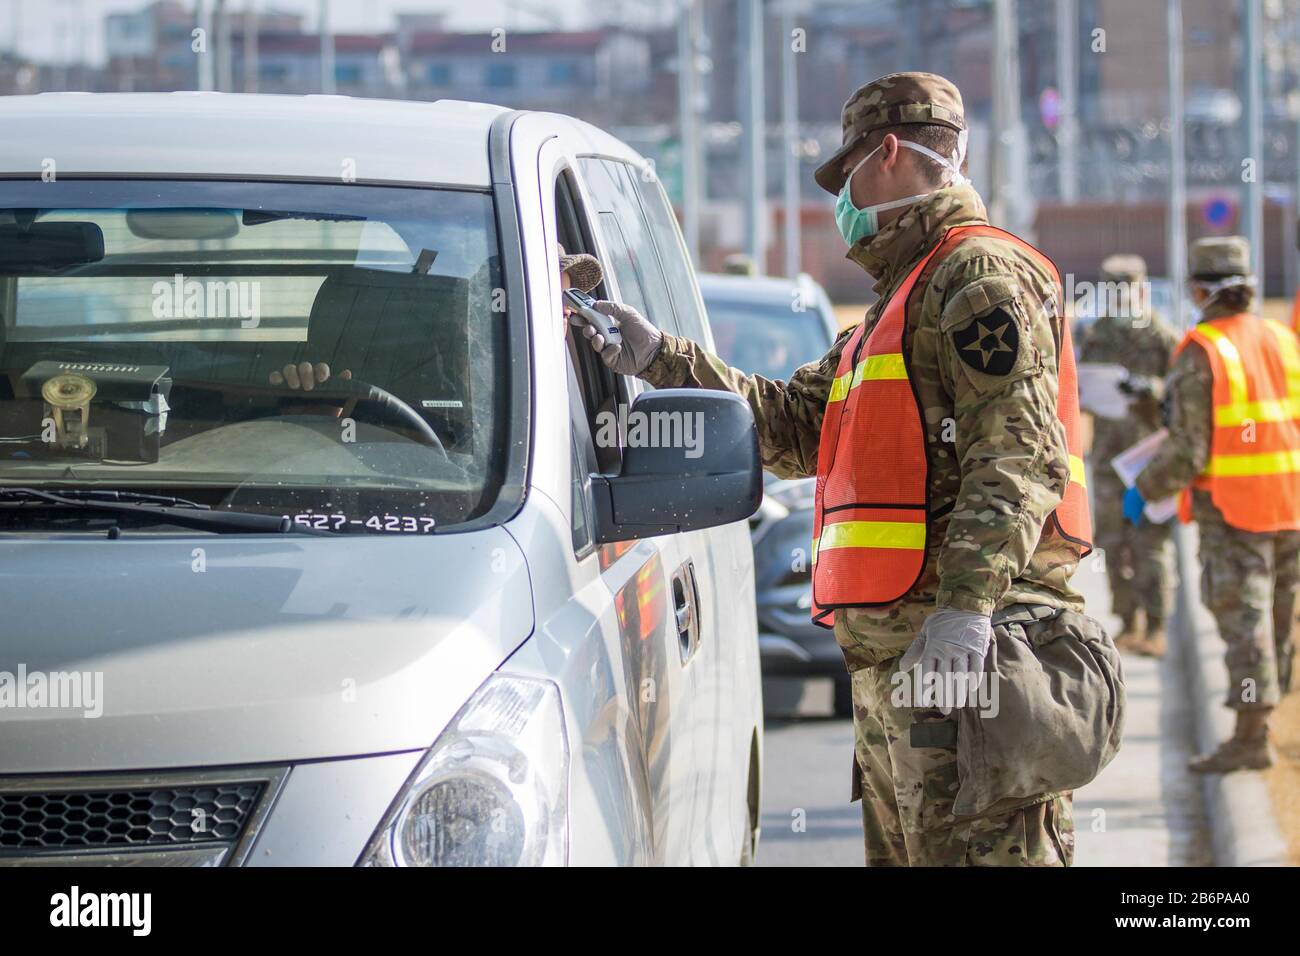 Soldat prenant la température d'un banlieue pour la sélection de COVID-19 à la garnison de l'armée américaine Humphreys (Camp Humphreys), Corée du Sud, 27 février 2020. Banque D'Images